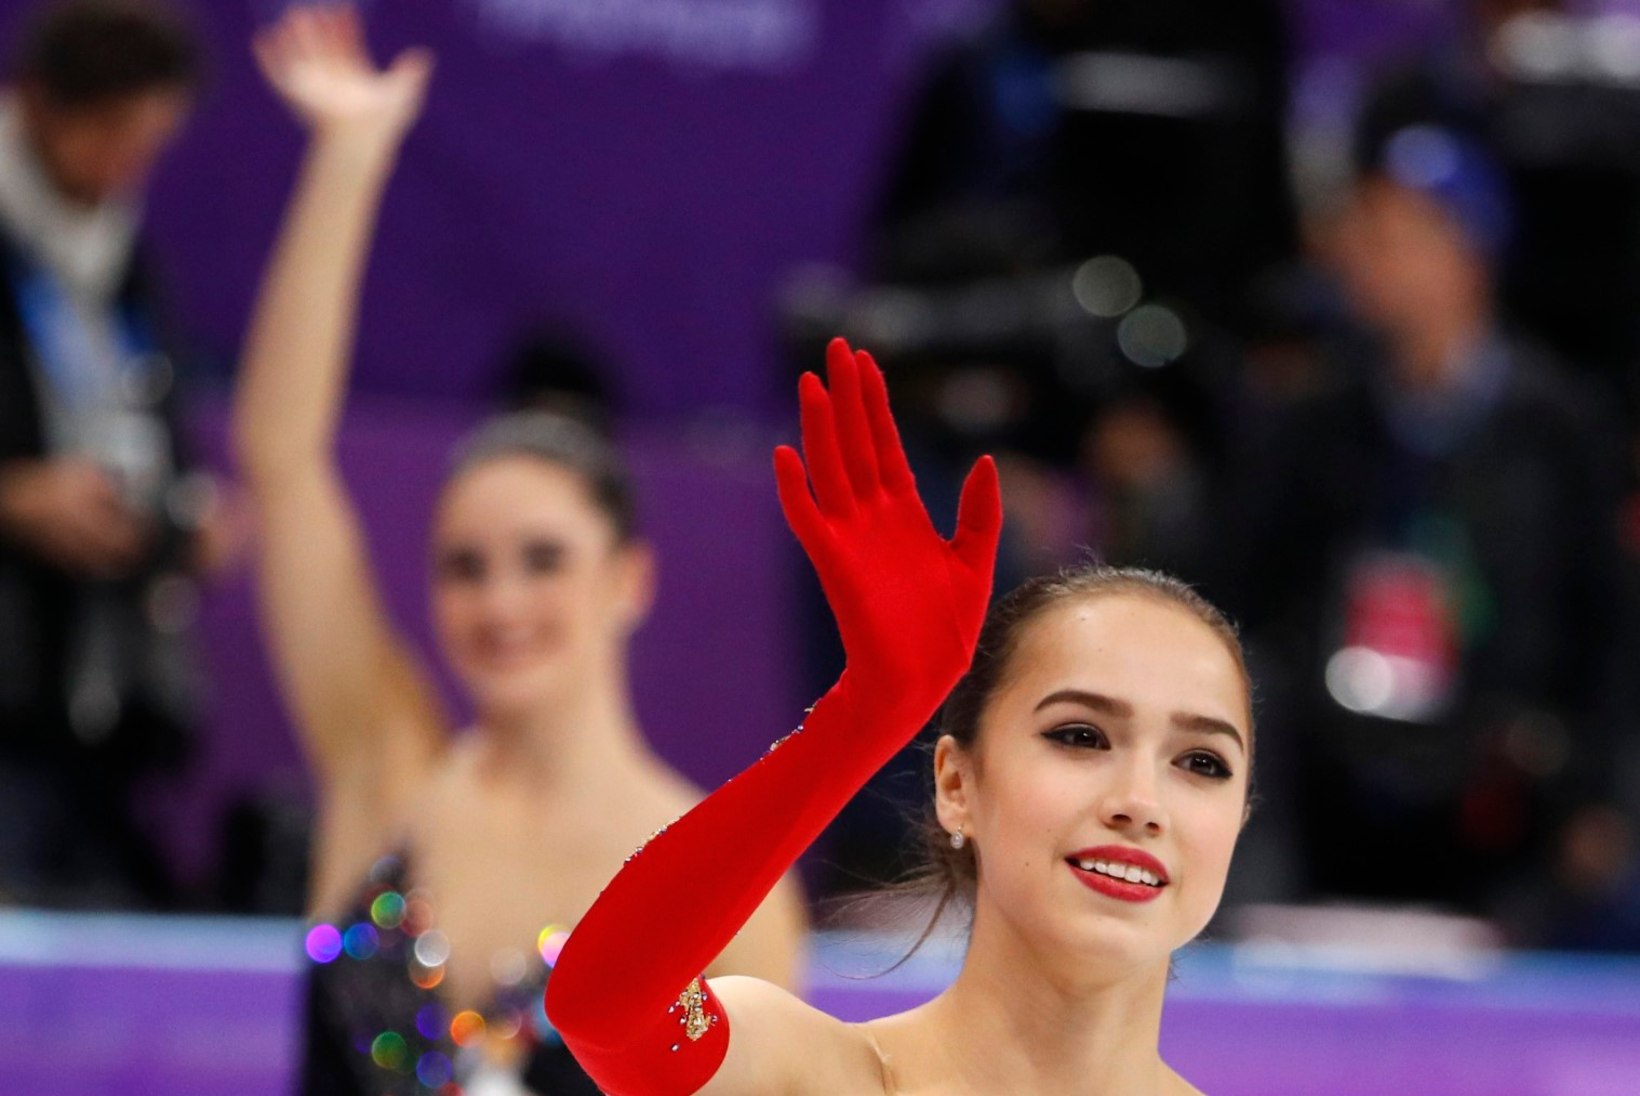 15aastane imelaps avas kaks päeva enne olümpia lõppu venelastele kullasaldo